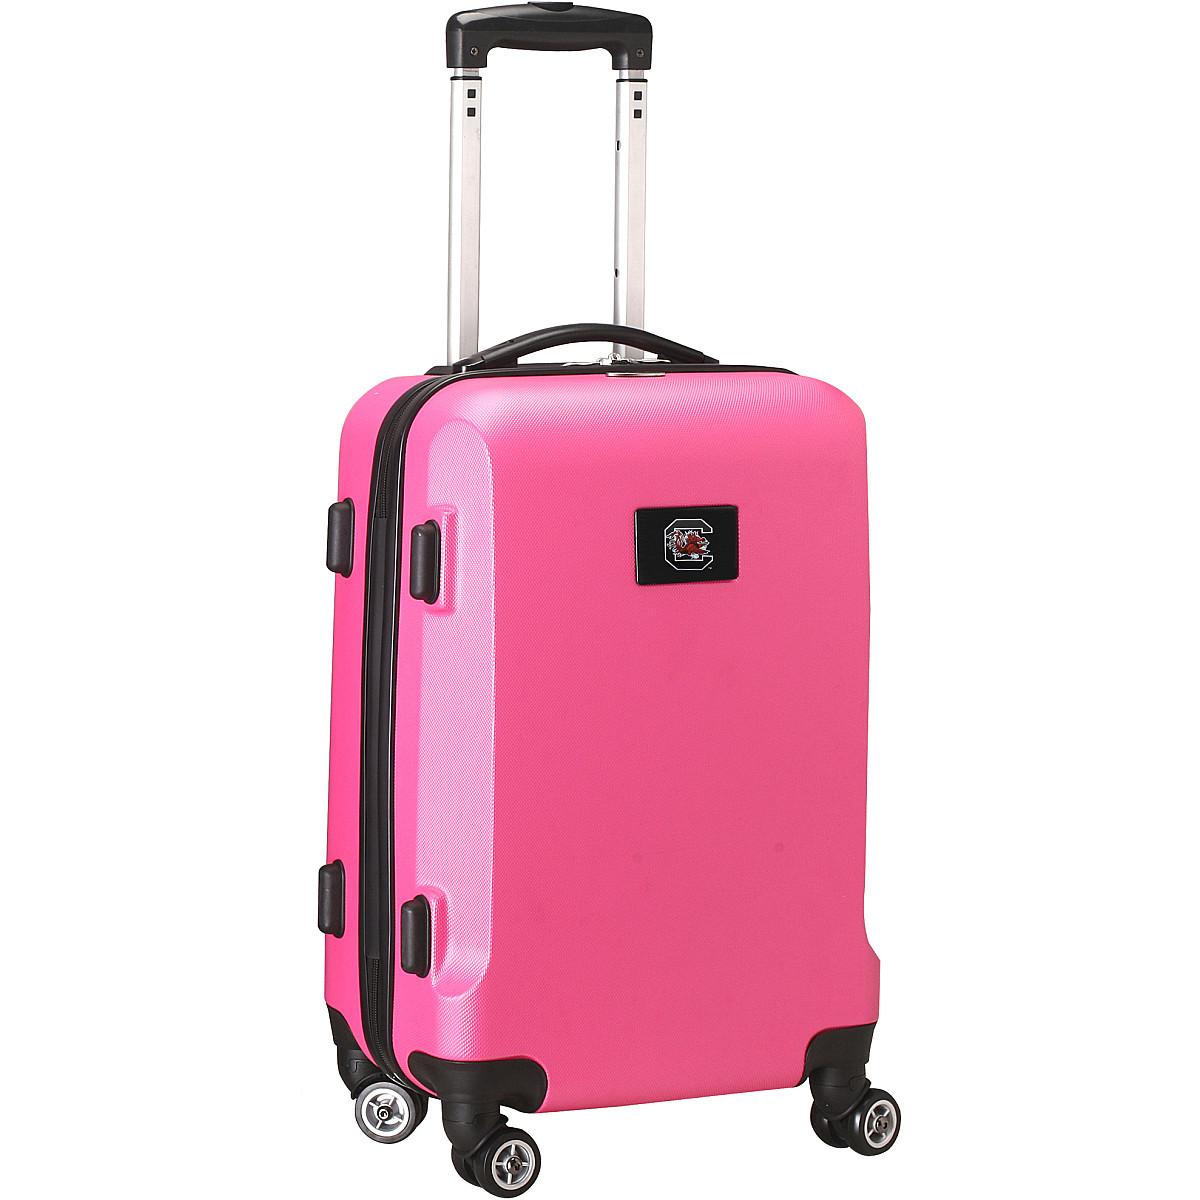 Denco Luggage Denco Sports Luggage University Of South Carolina 20" Hardcase Domestic Carry-On Spinner